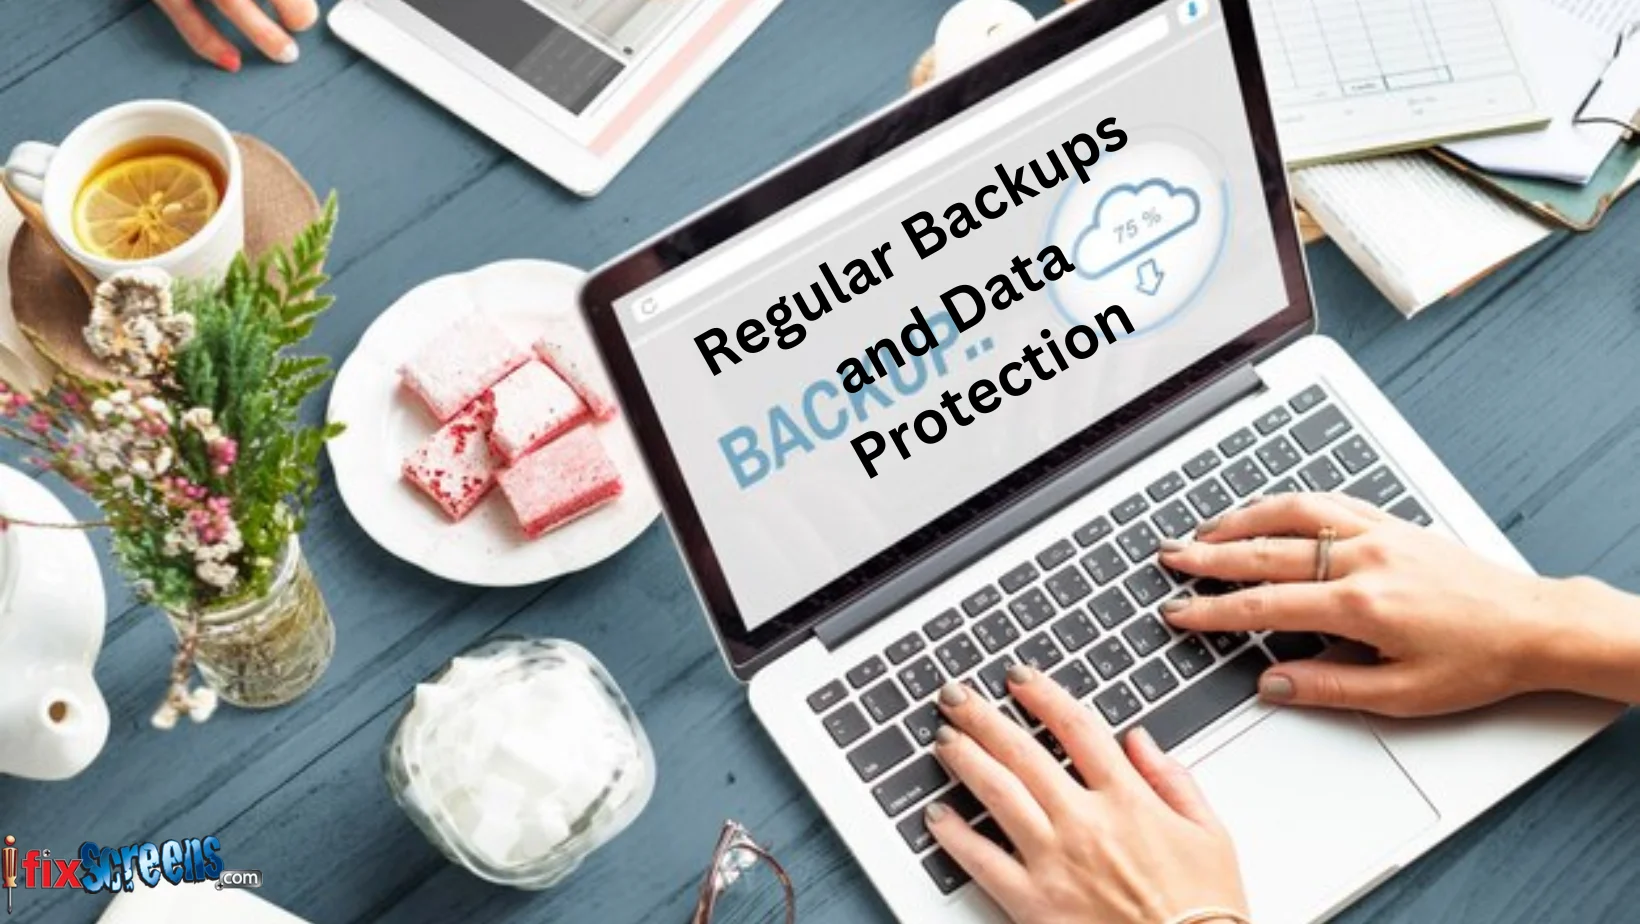 Regular Backups And Data Protection